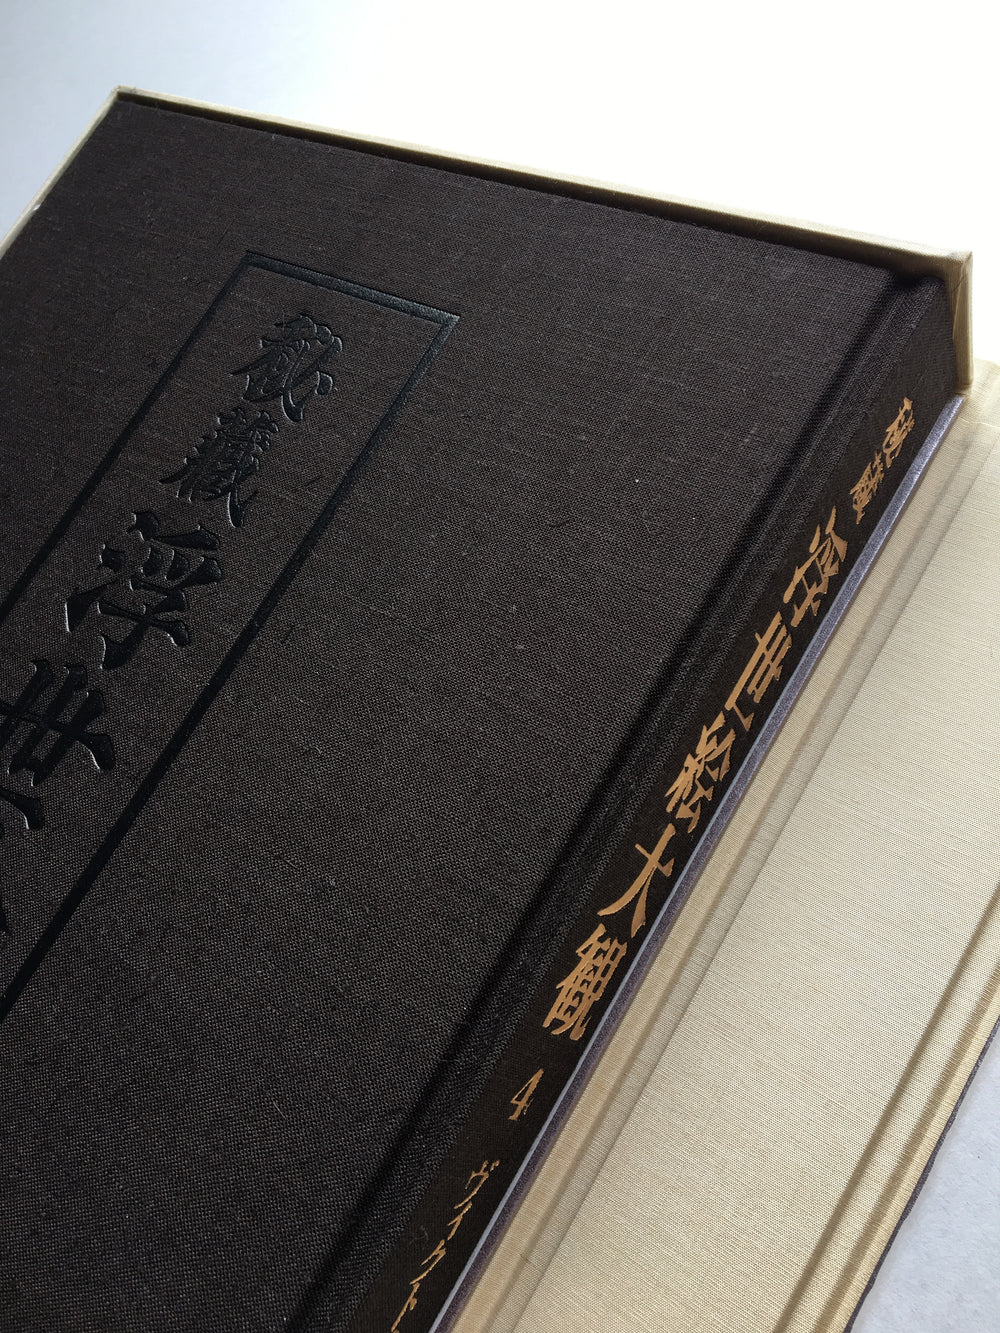 UKIYO-E MASTERPIECES IN EUROPEAN COLLECTIONS VOL.4 - Kodansha Edition, 1988.